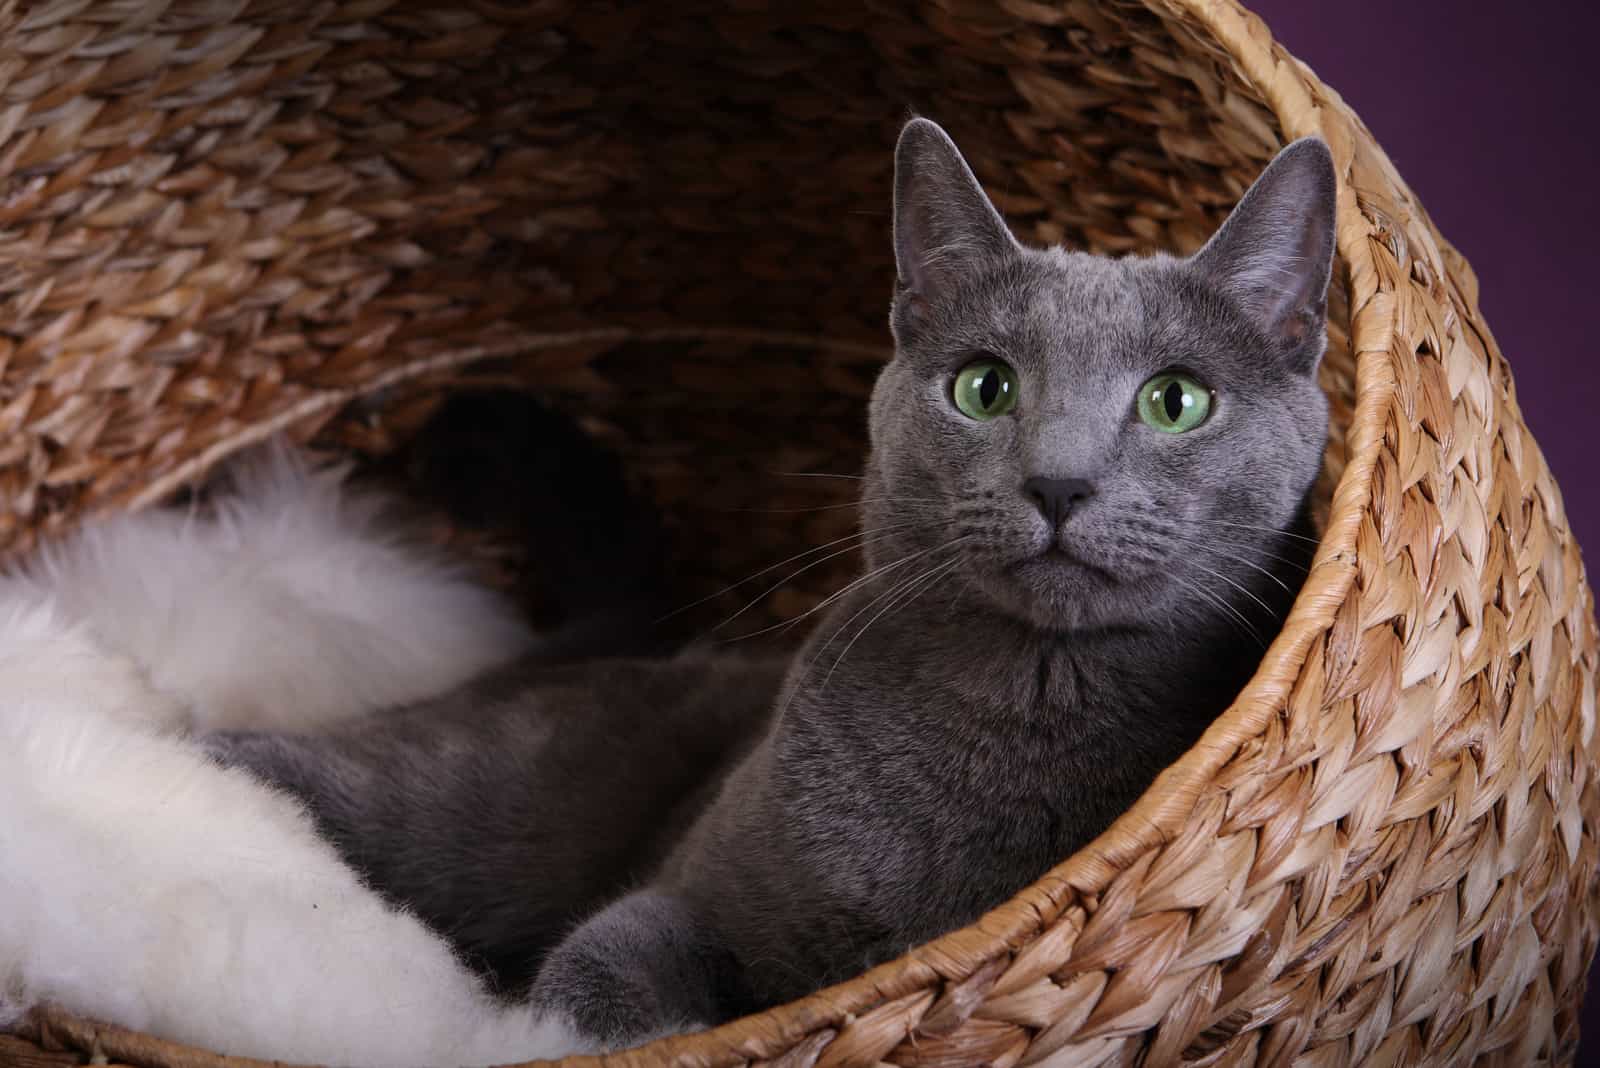 Russian Blue Cat sitting in basket